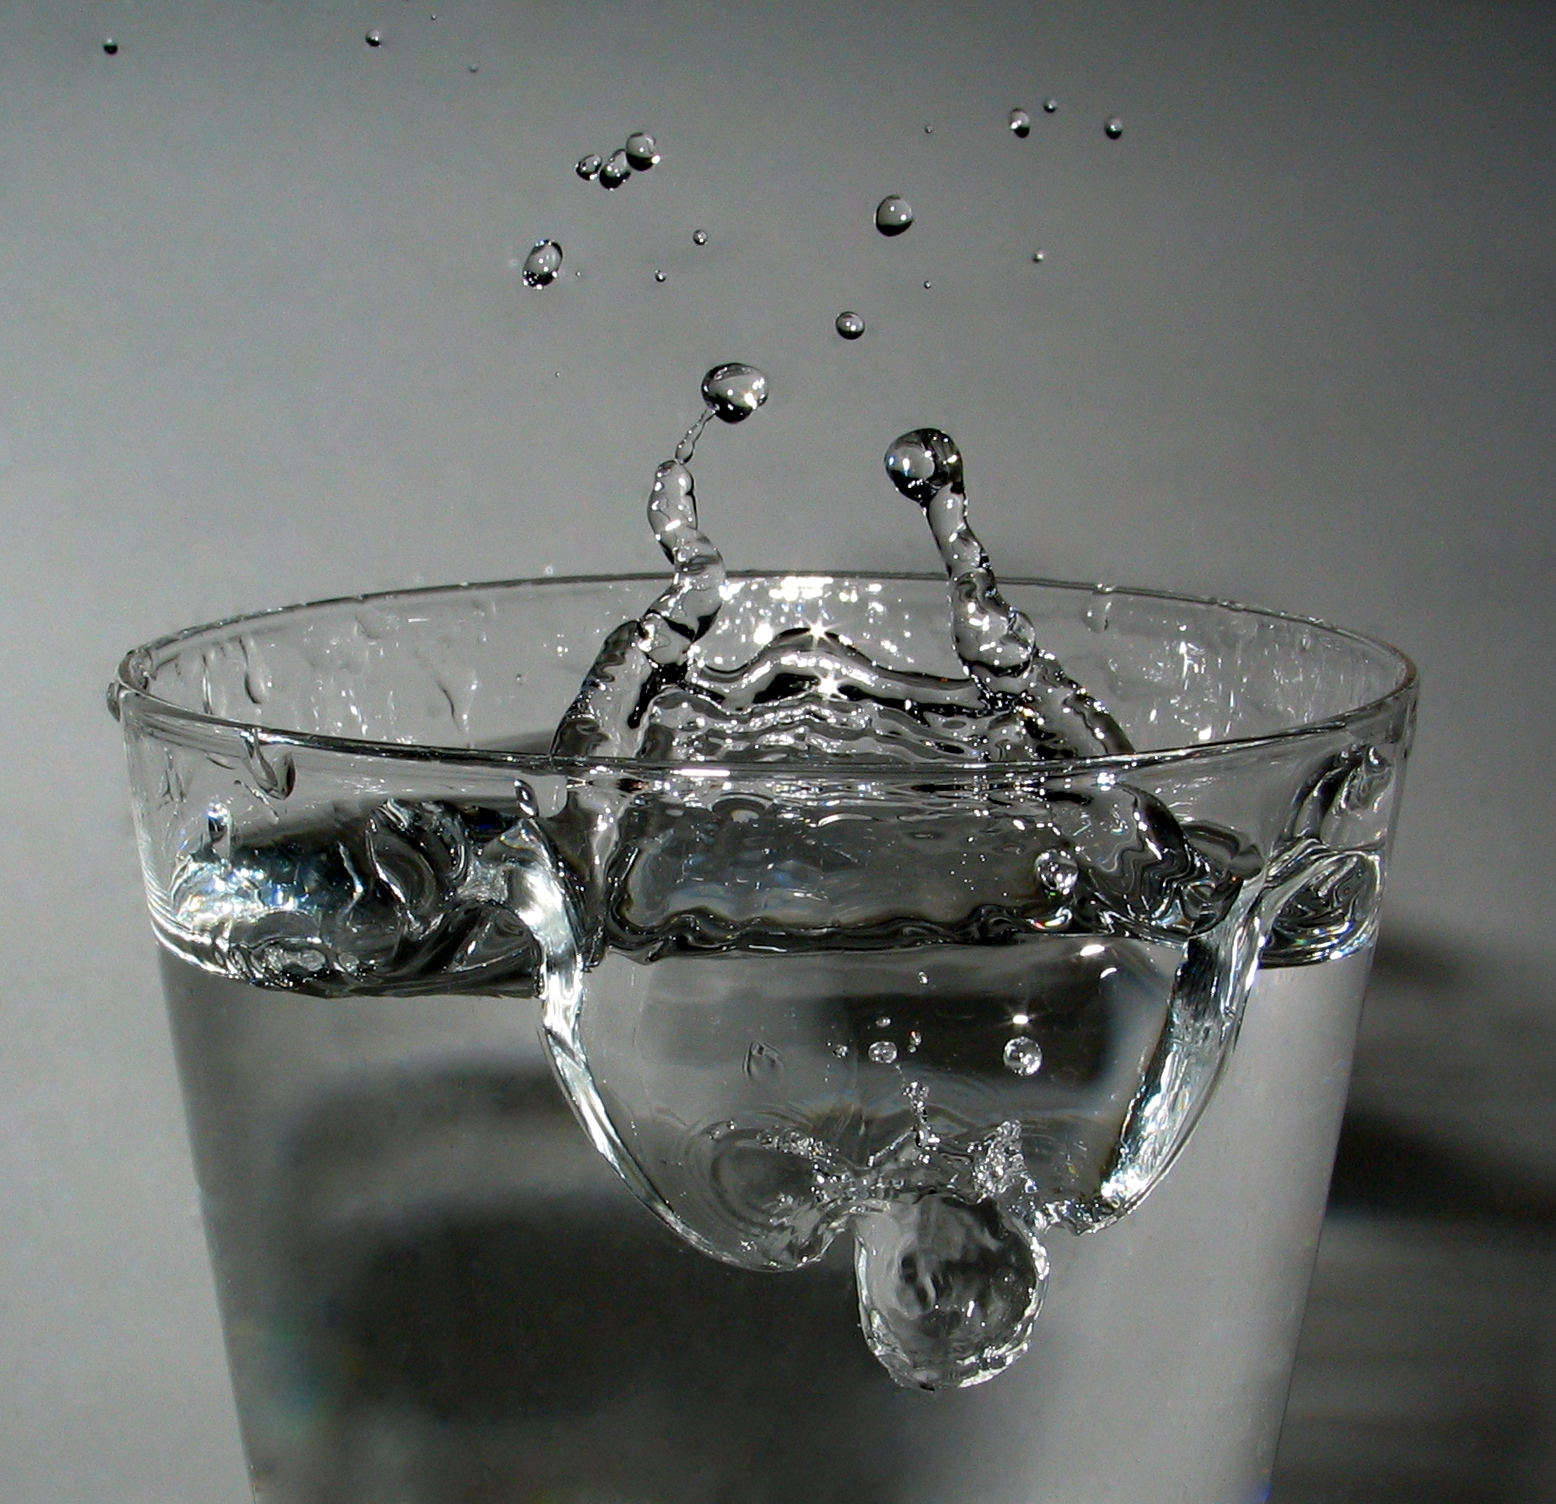 מים. מתוך ויקיפדיה - תמונה ברשיון CC